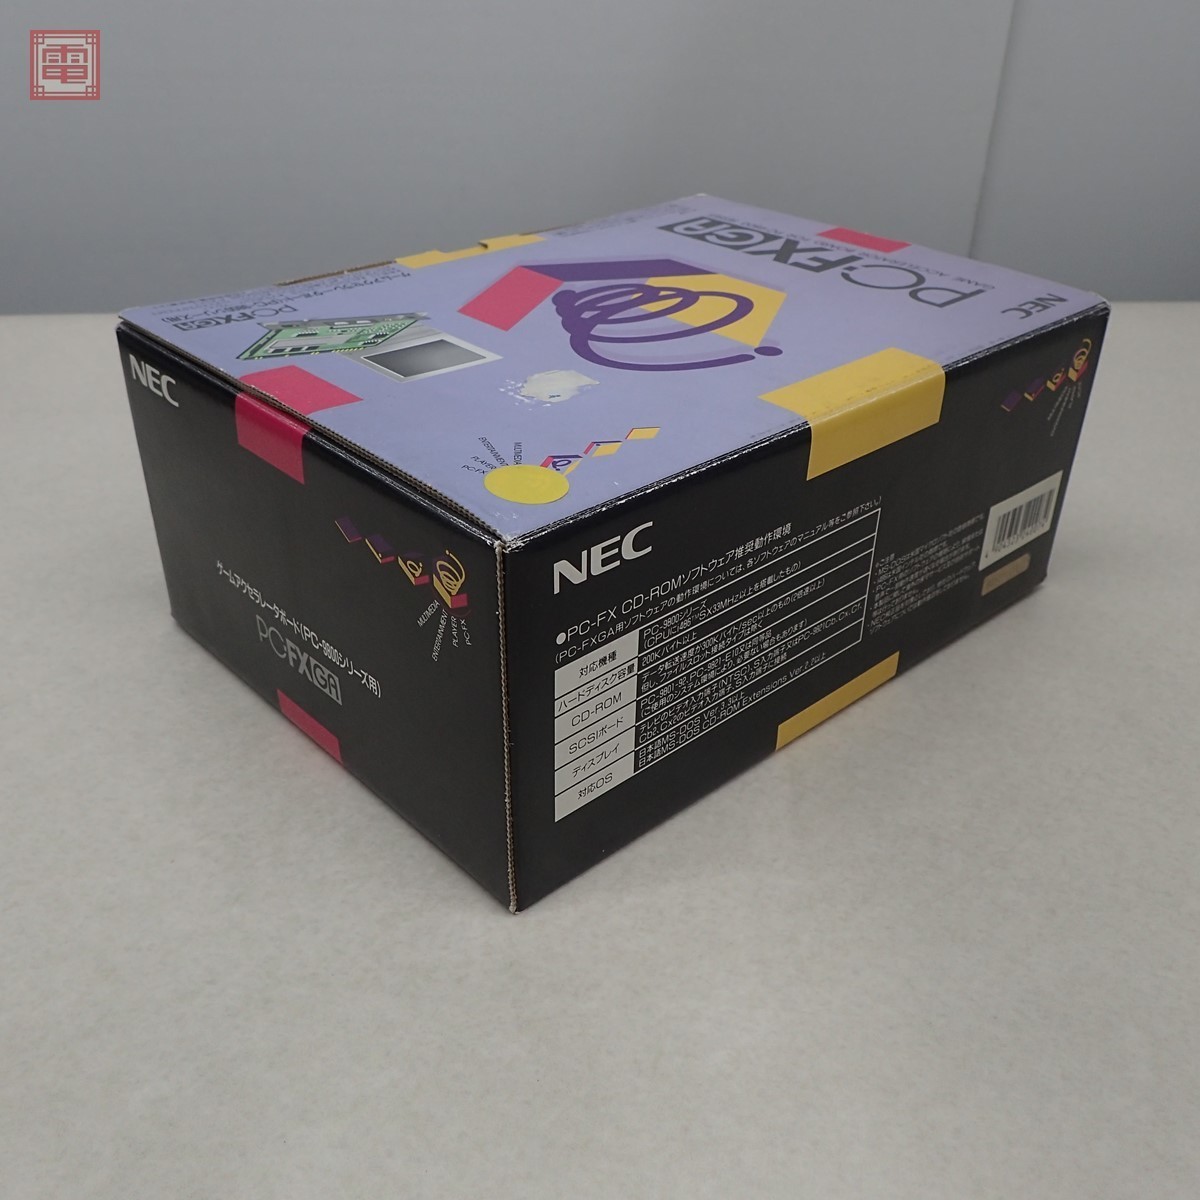 NEC PC FX GA ゲームアクセラレータボードPCシリーズ用